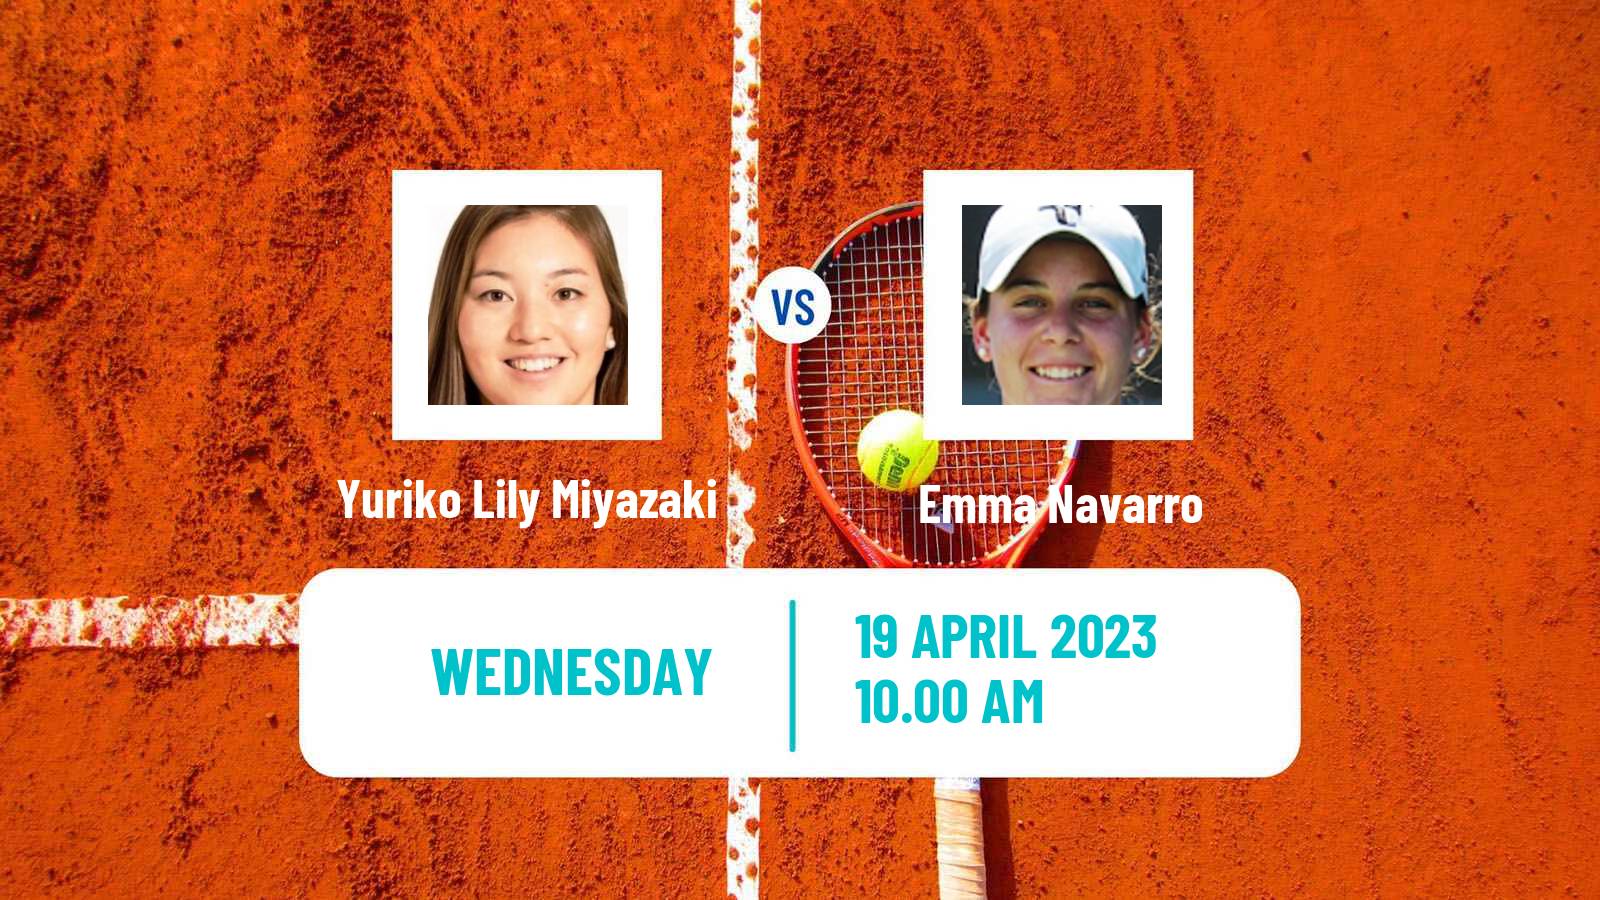 Tennis ITF Tournaments Yuriko Lily Miyazaki - Emma Navarro